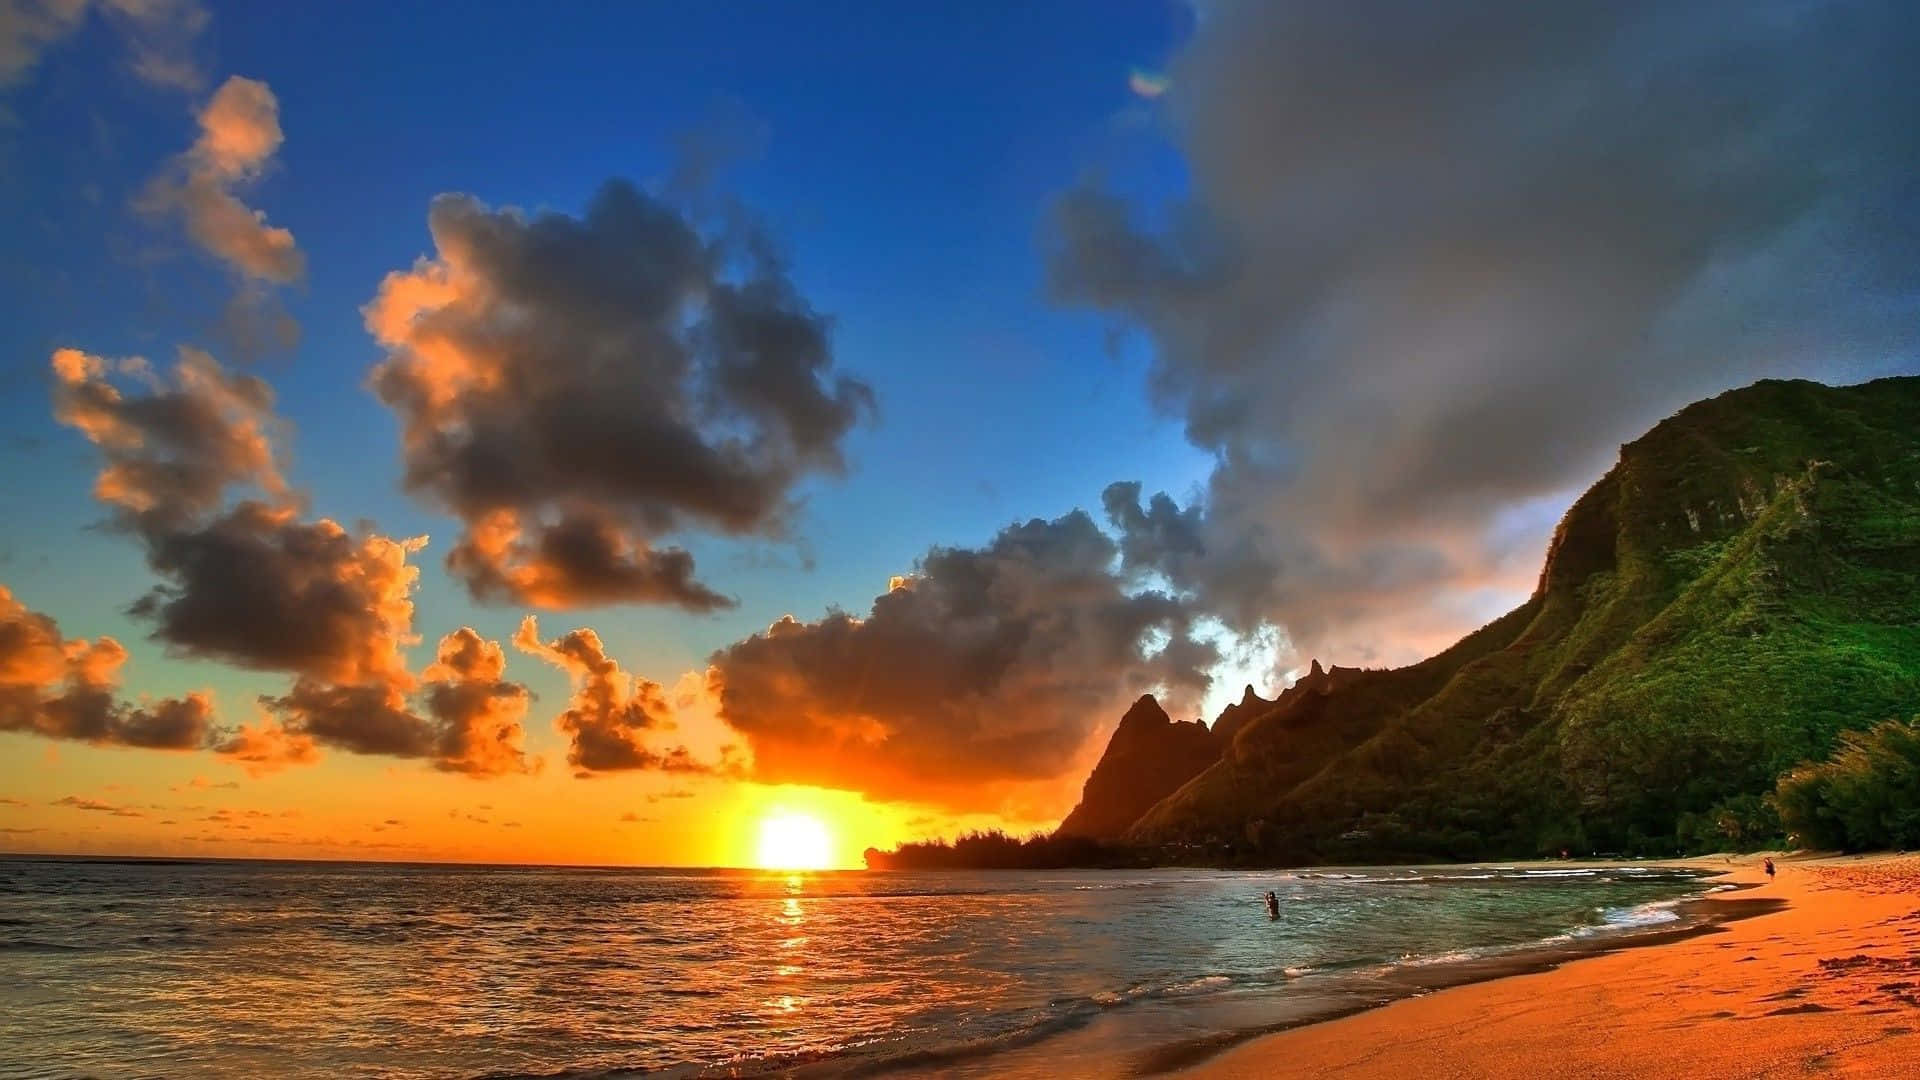 Enjoy the beauty of a peaceful evening beach sunset Wallpaper